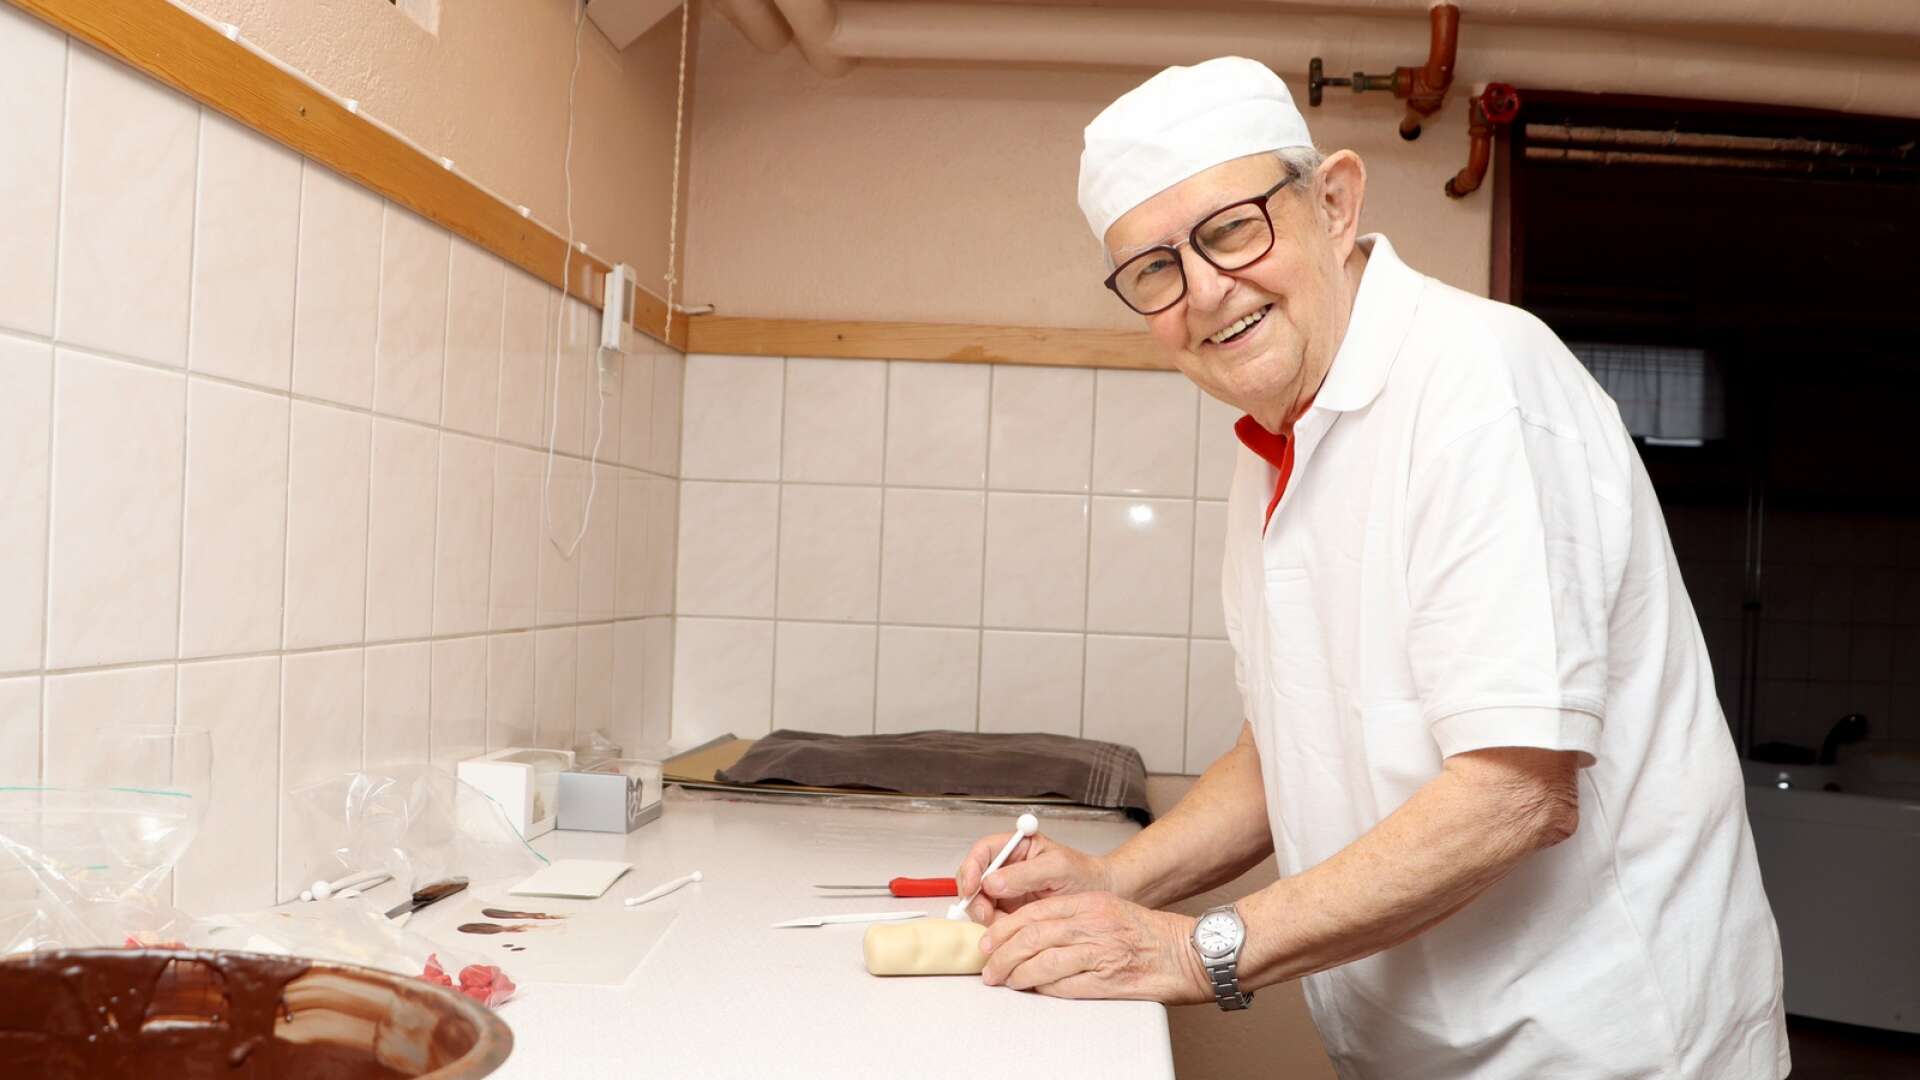 81-årige Sven-Olof Johansson tillverkar i marsipan hemma i sin källare.